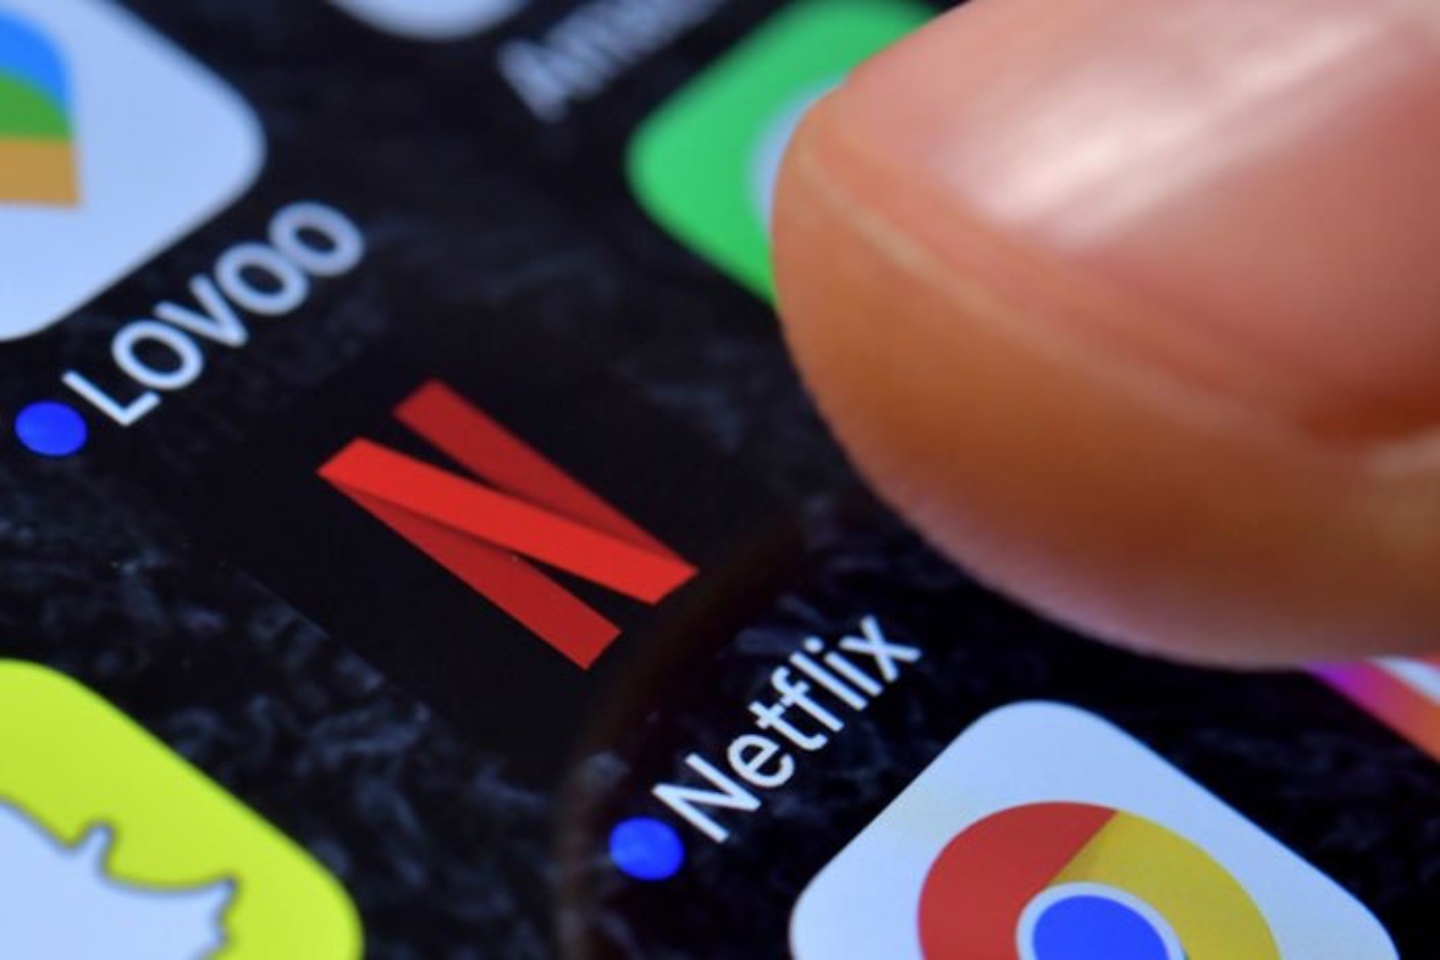 Netflix 可能快要可以調整影片播放速度了！Android 裝置搶先測試中